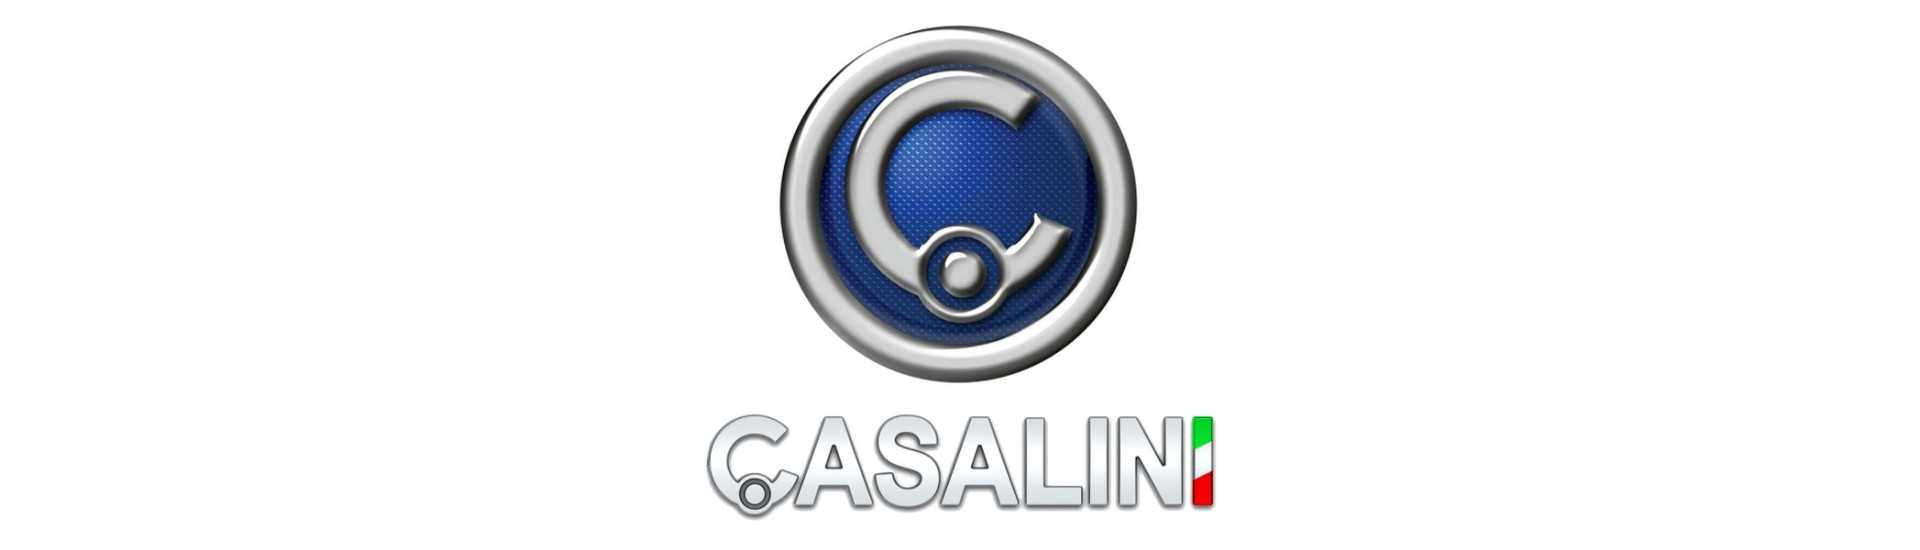 Luftkonditioneringsfilter till bästa prisbil utan tillstånd Casalini